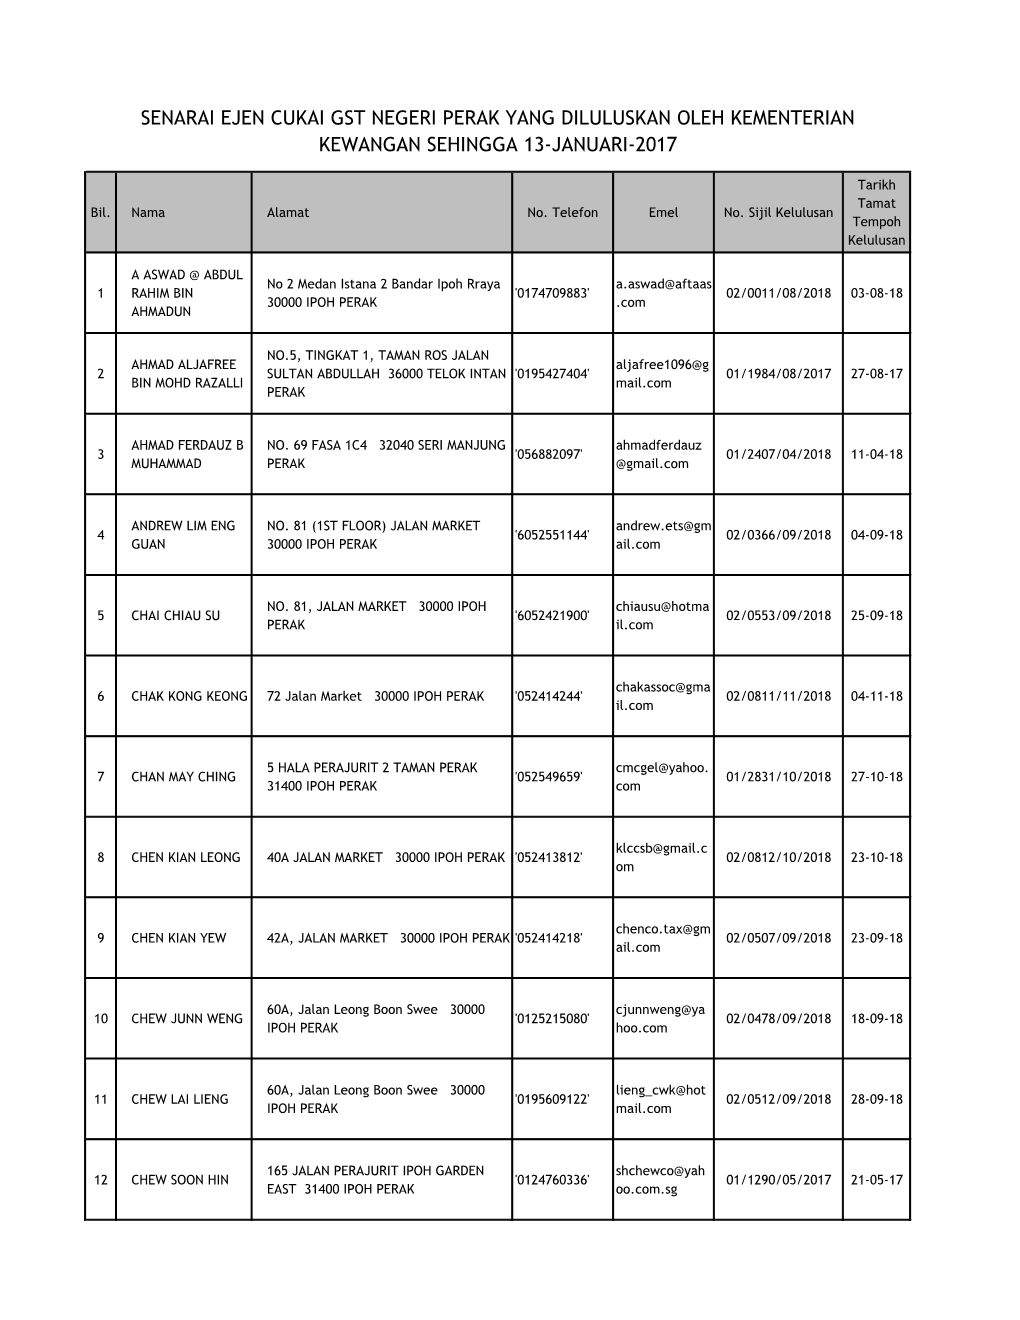 Senarai Ejen Cukai Gst Negeri Perak Yang Diluluskan Oleh Kementerian Kewangan Sehingga 13-Januari-2017